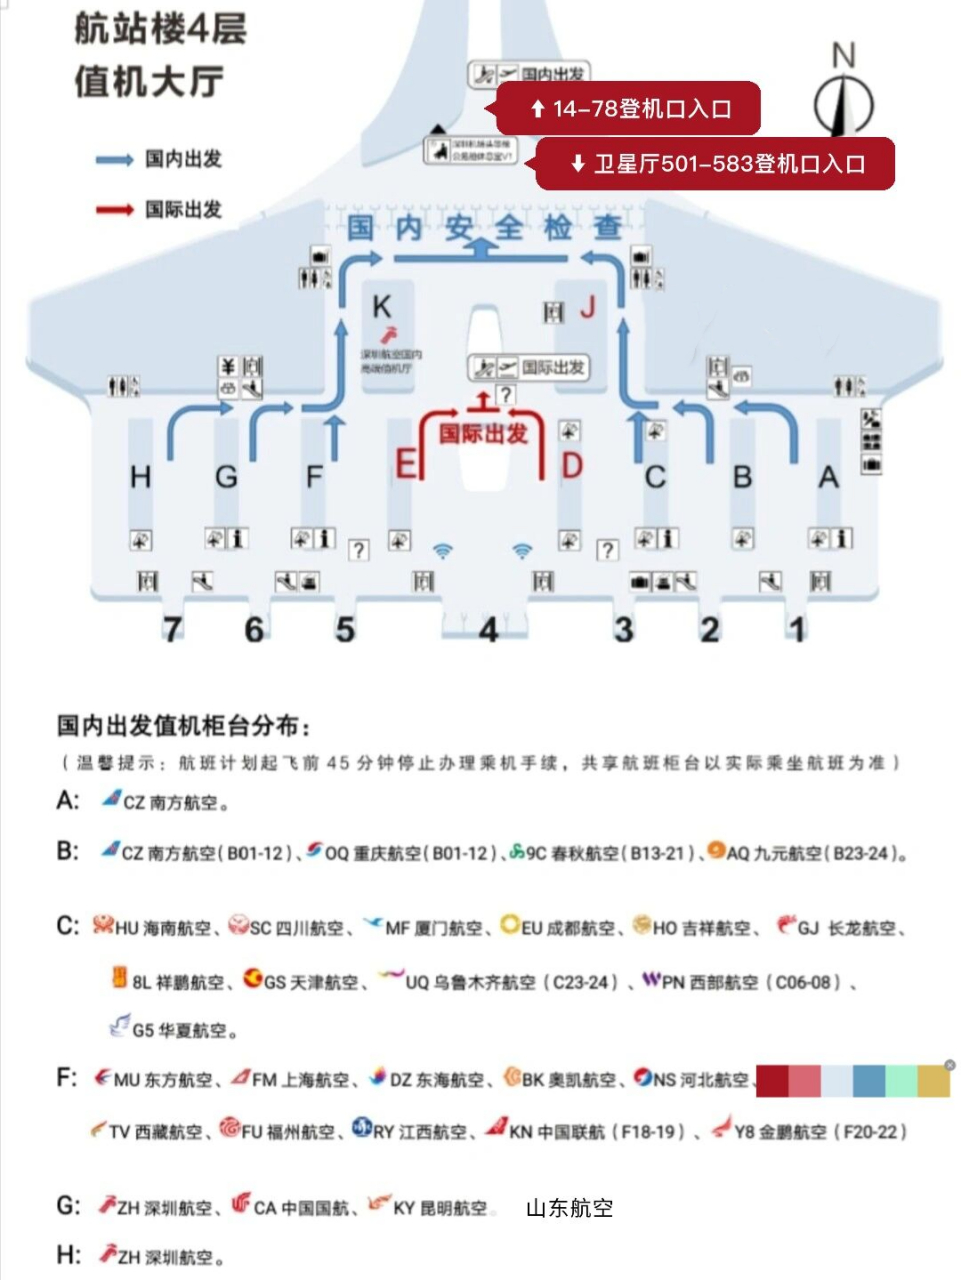 深圳机场值机岛分布图图片